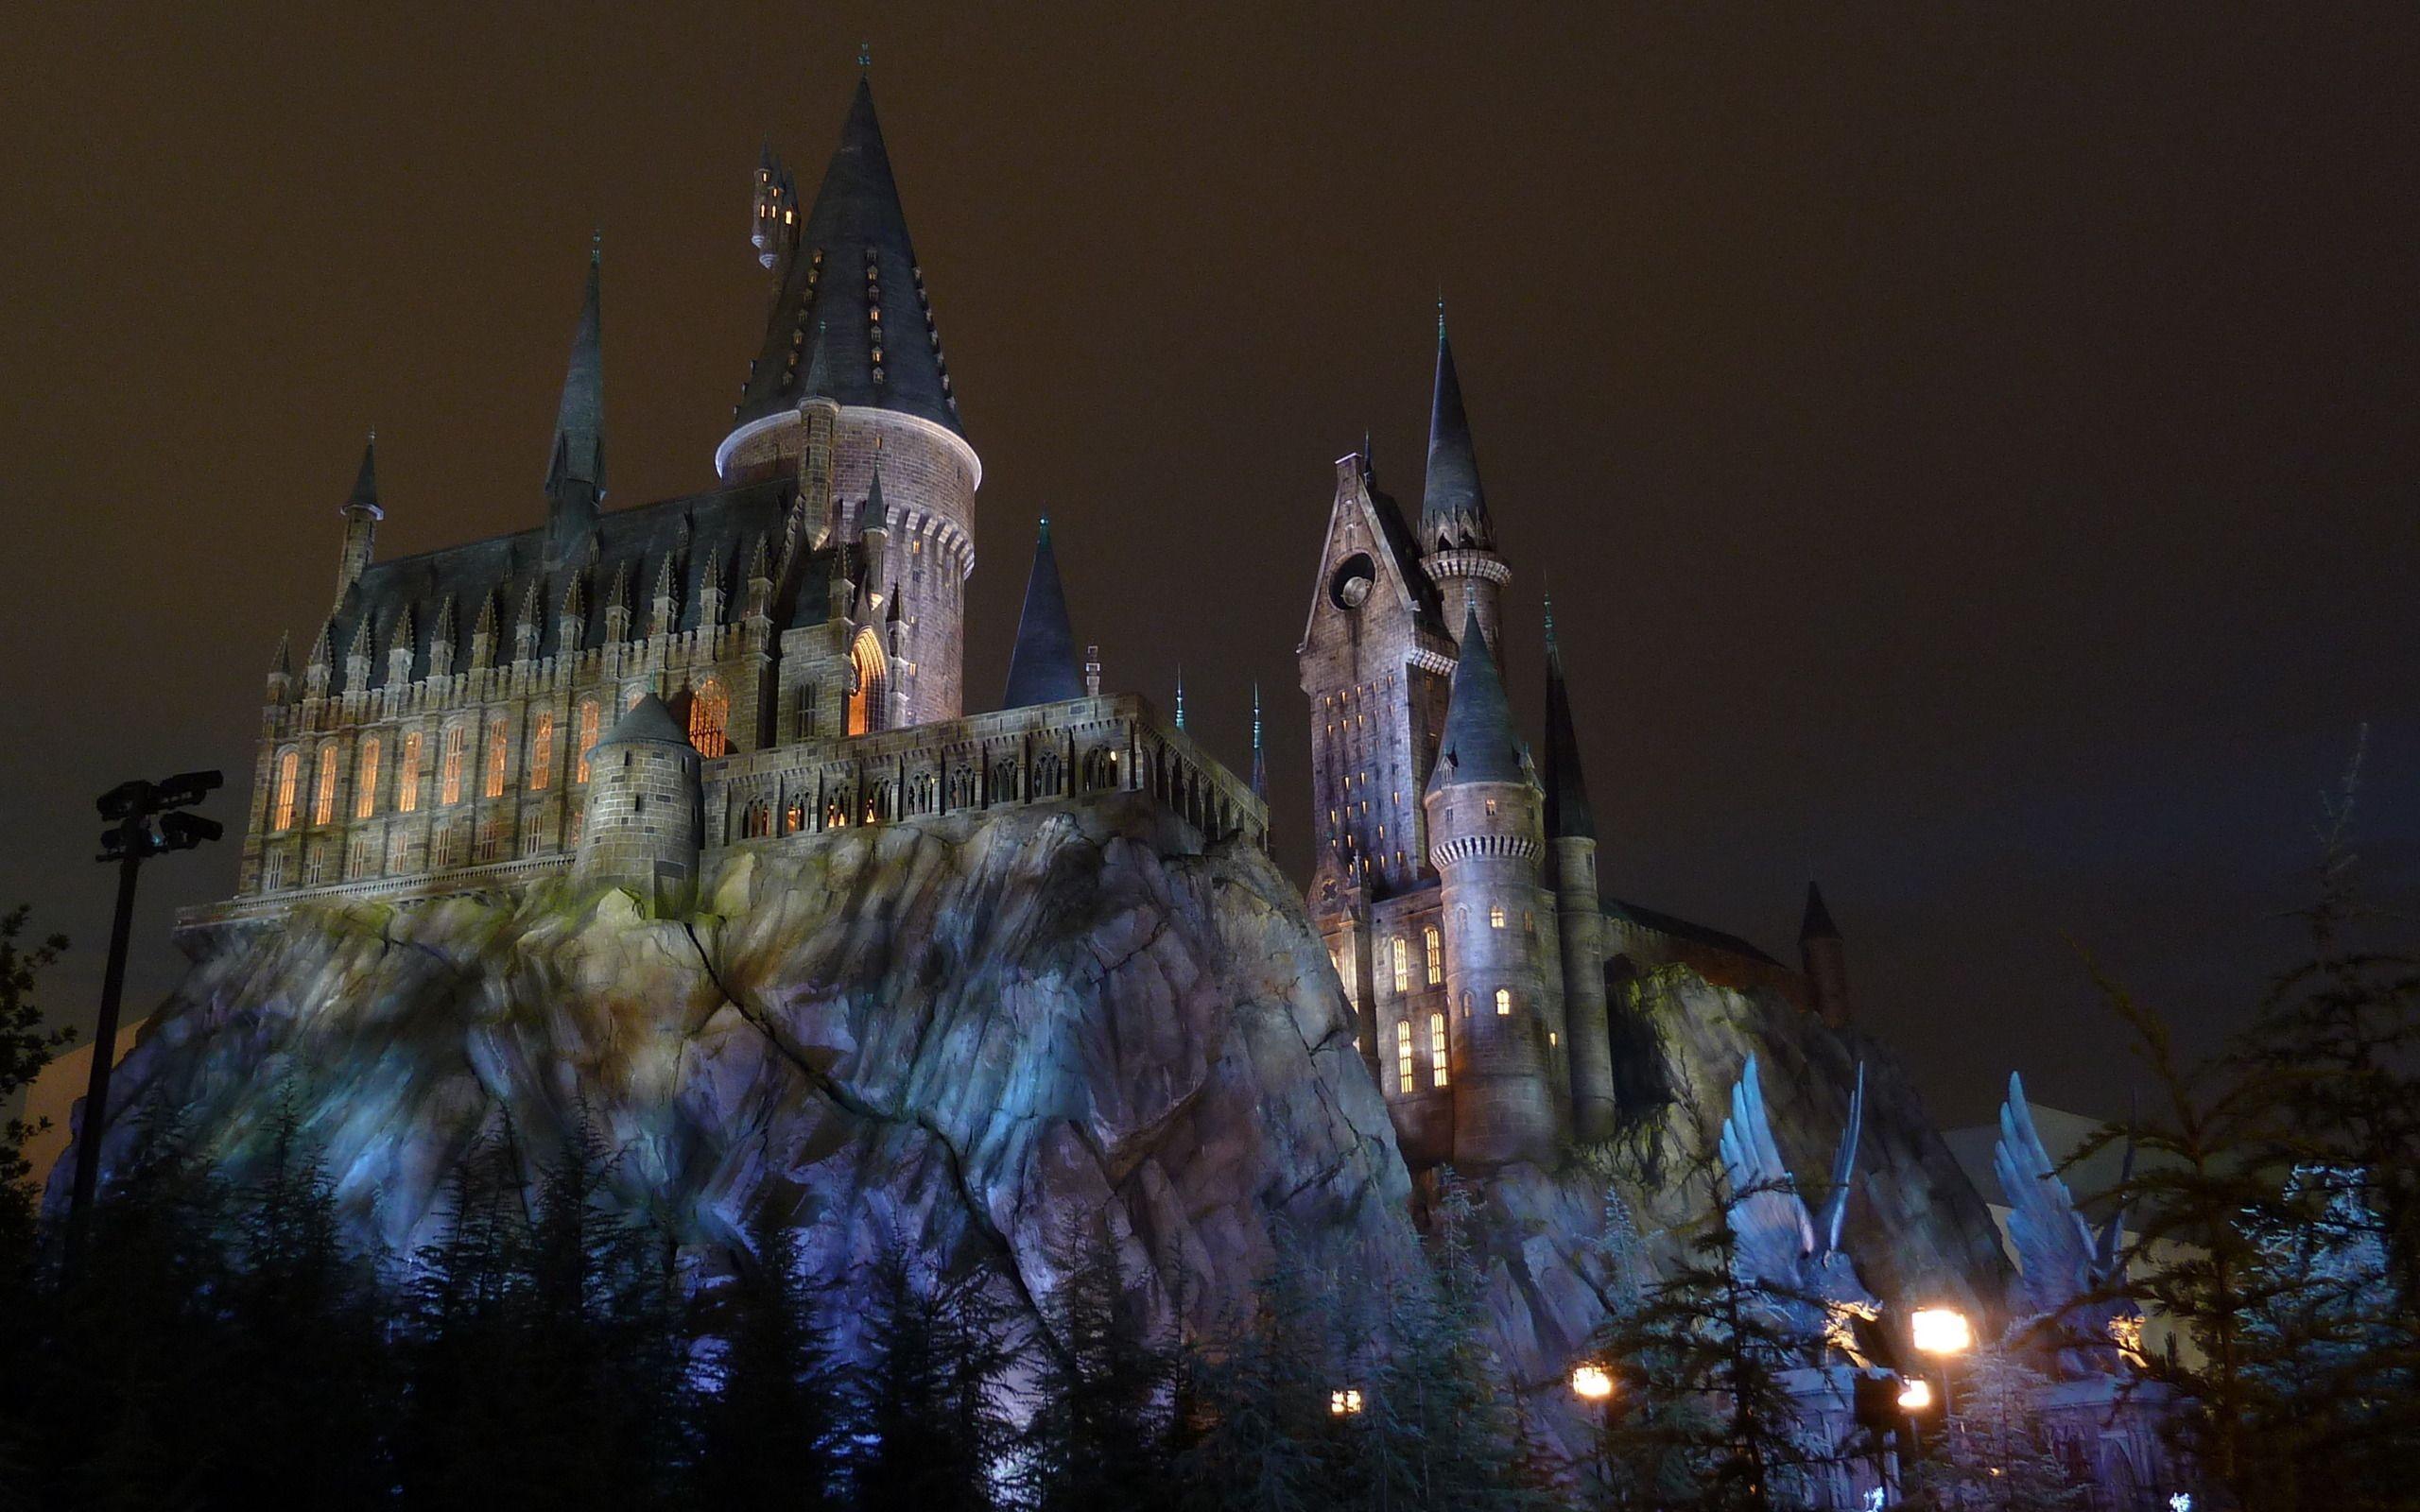 Harry Potter, Hogwarts castle wallpaper and image